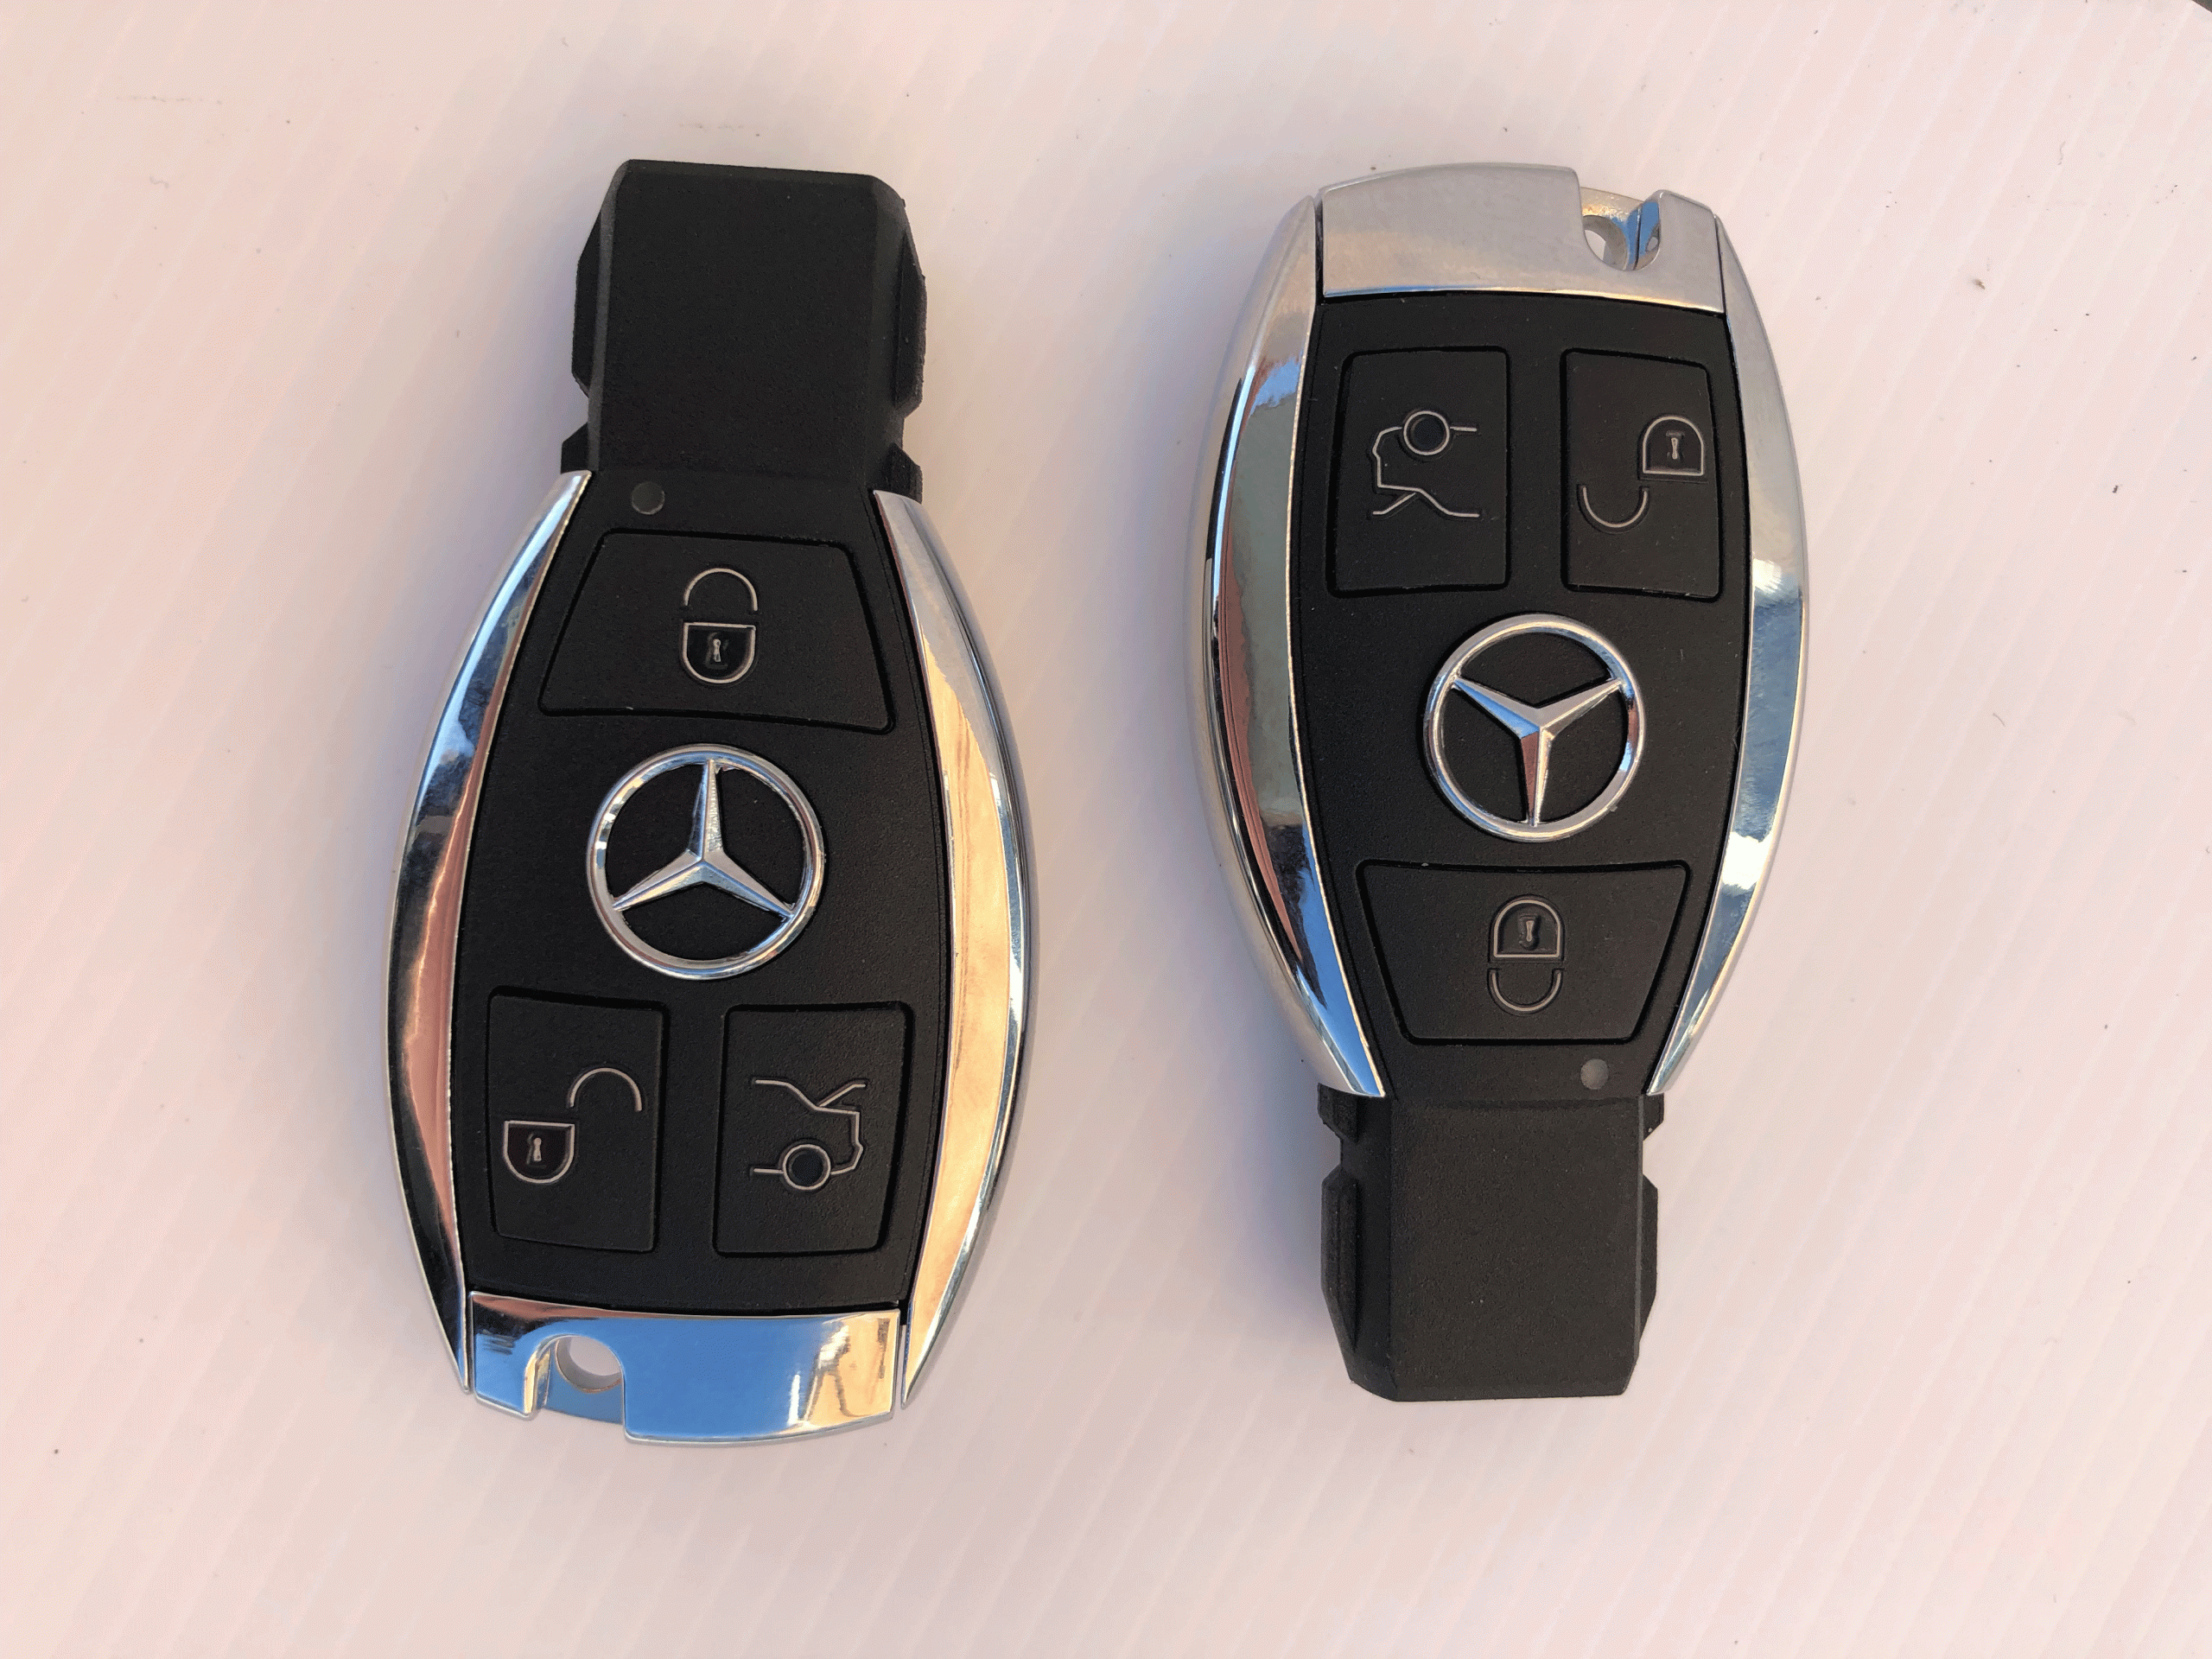 Car key and spare car key